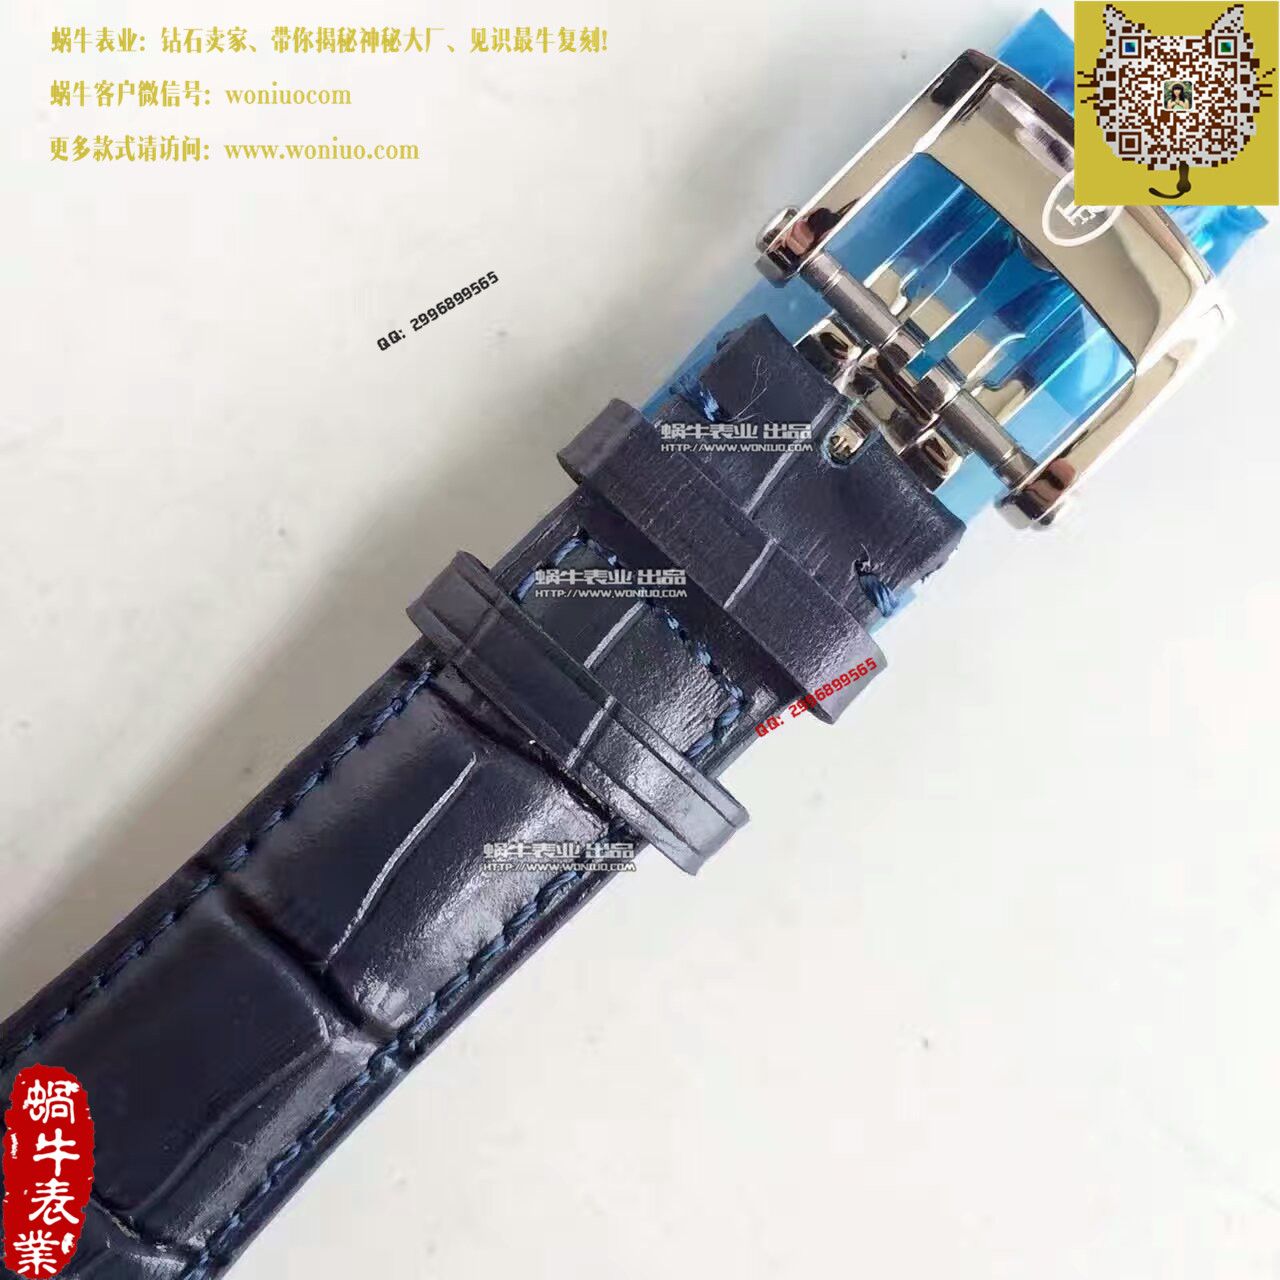 【一比一复刻手表】帕玛强尼Tonda系列特别版镂空限量腕表PFC267-3000600-HA3141腕表 / PM017